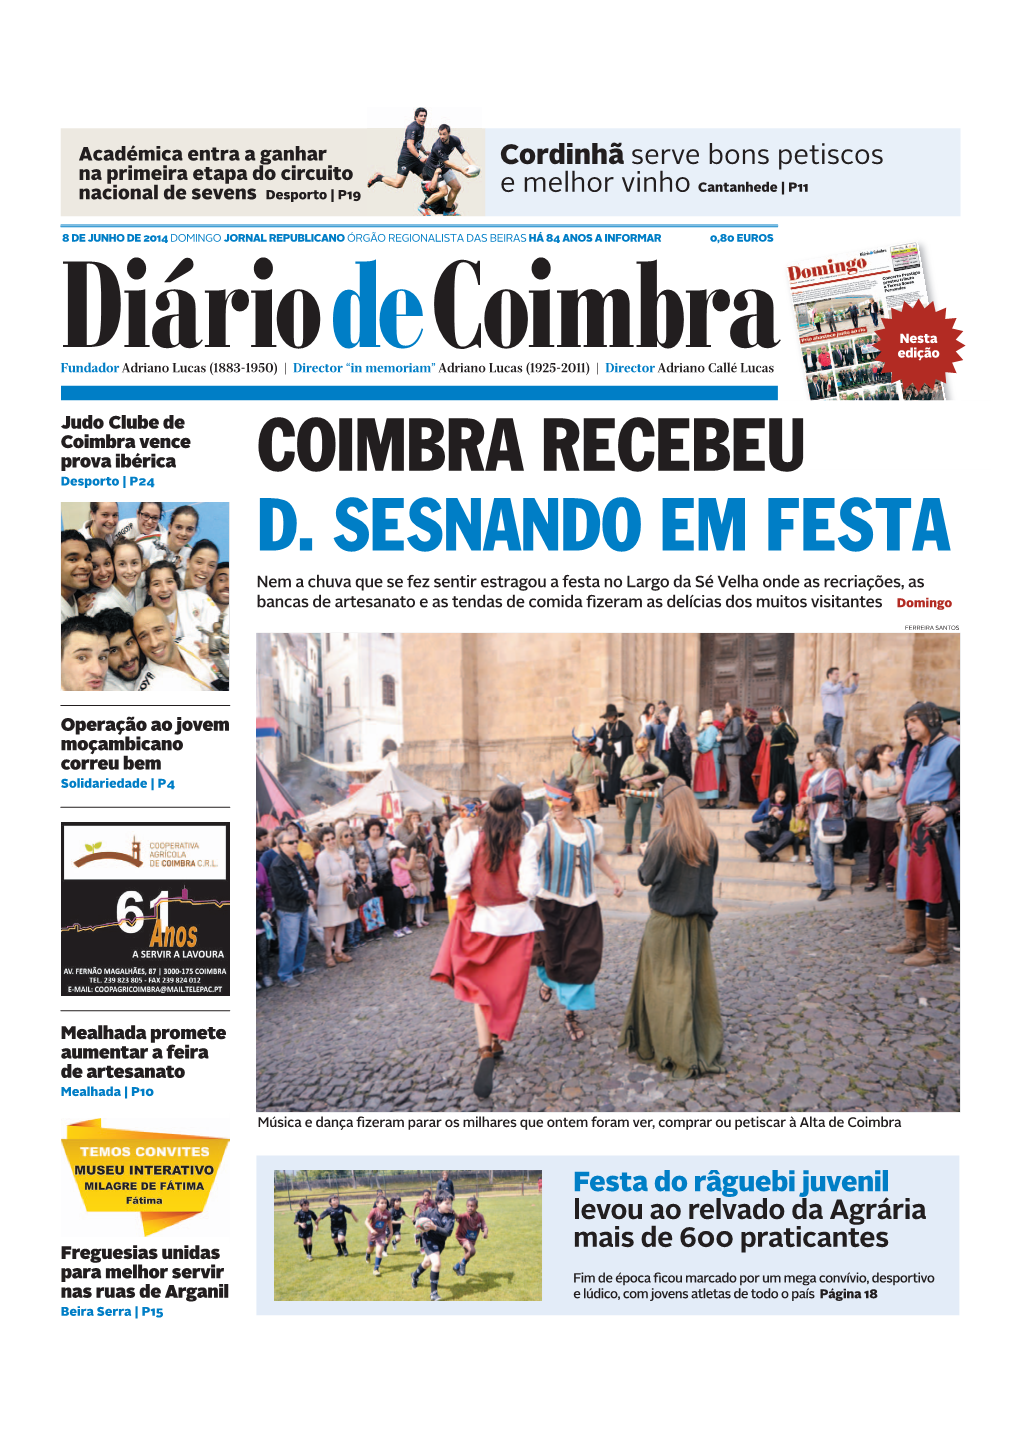 Coimbra Recebeu D. Sesnando Em Festa